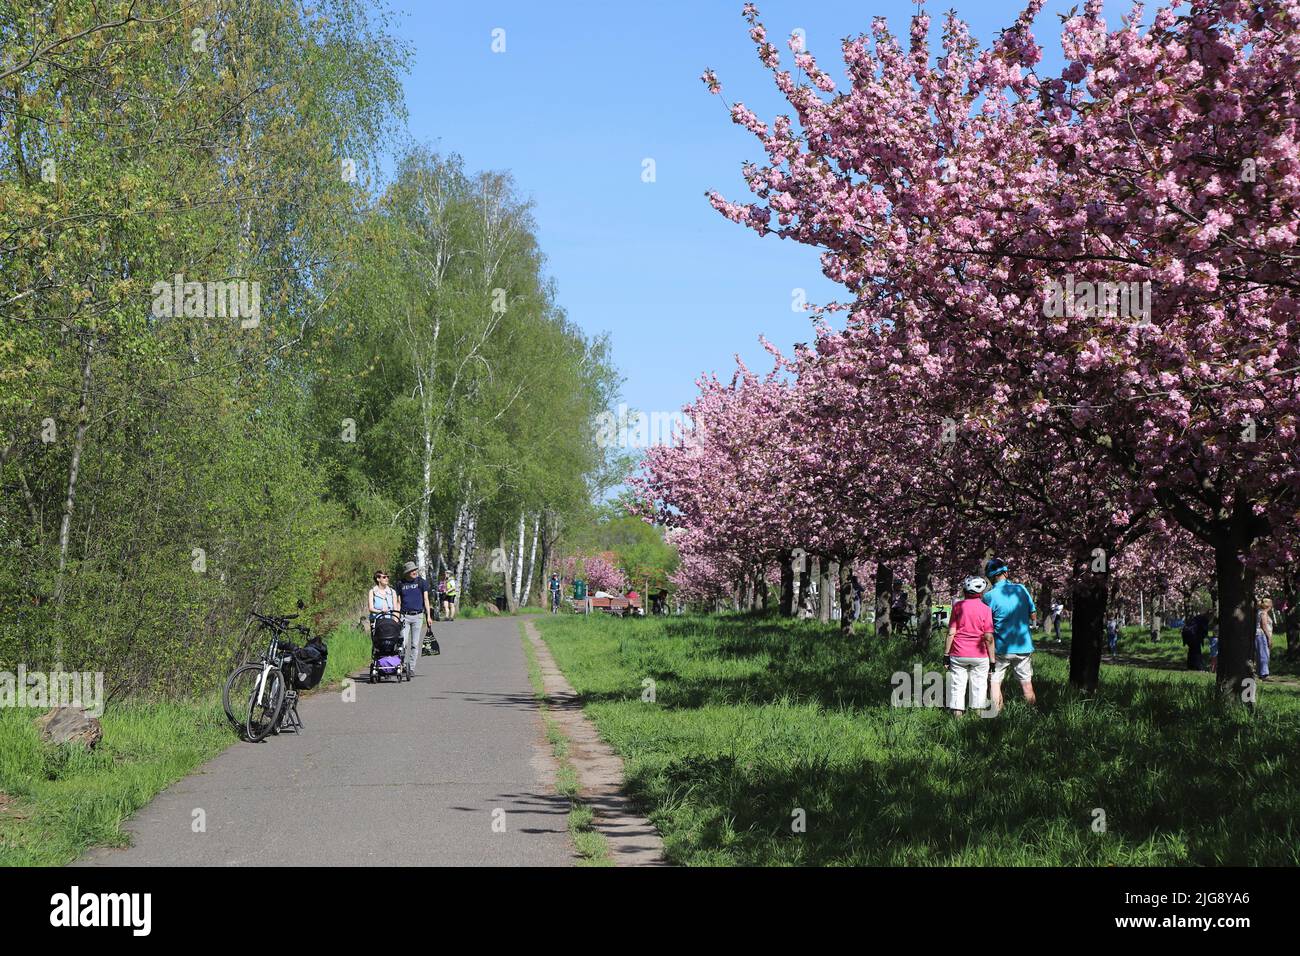 Germany, Berlin, wall way, cherry blossom avenue Stock Photo